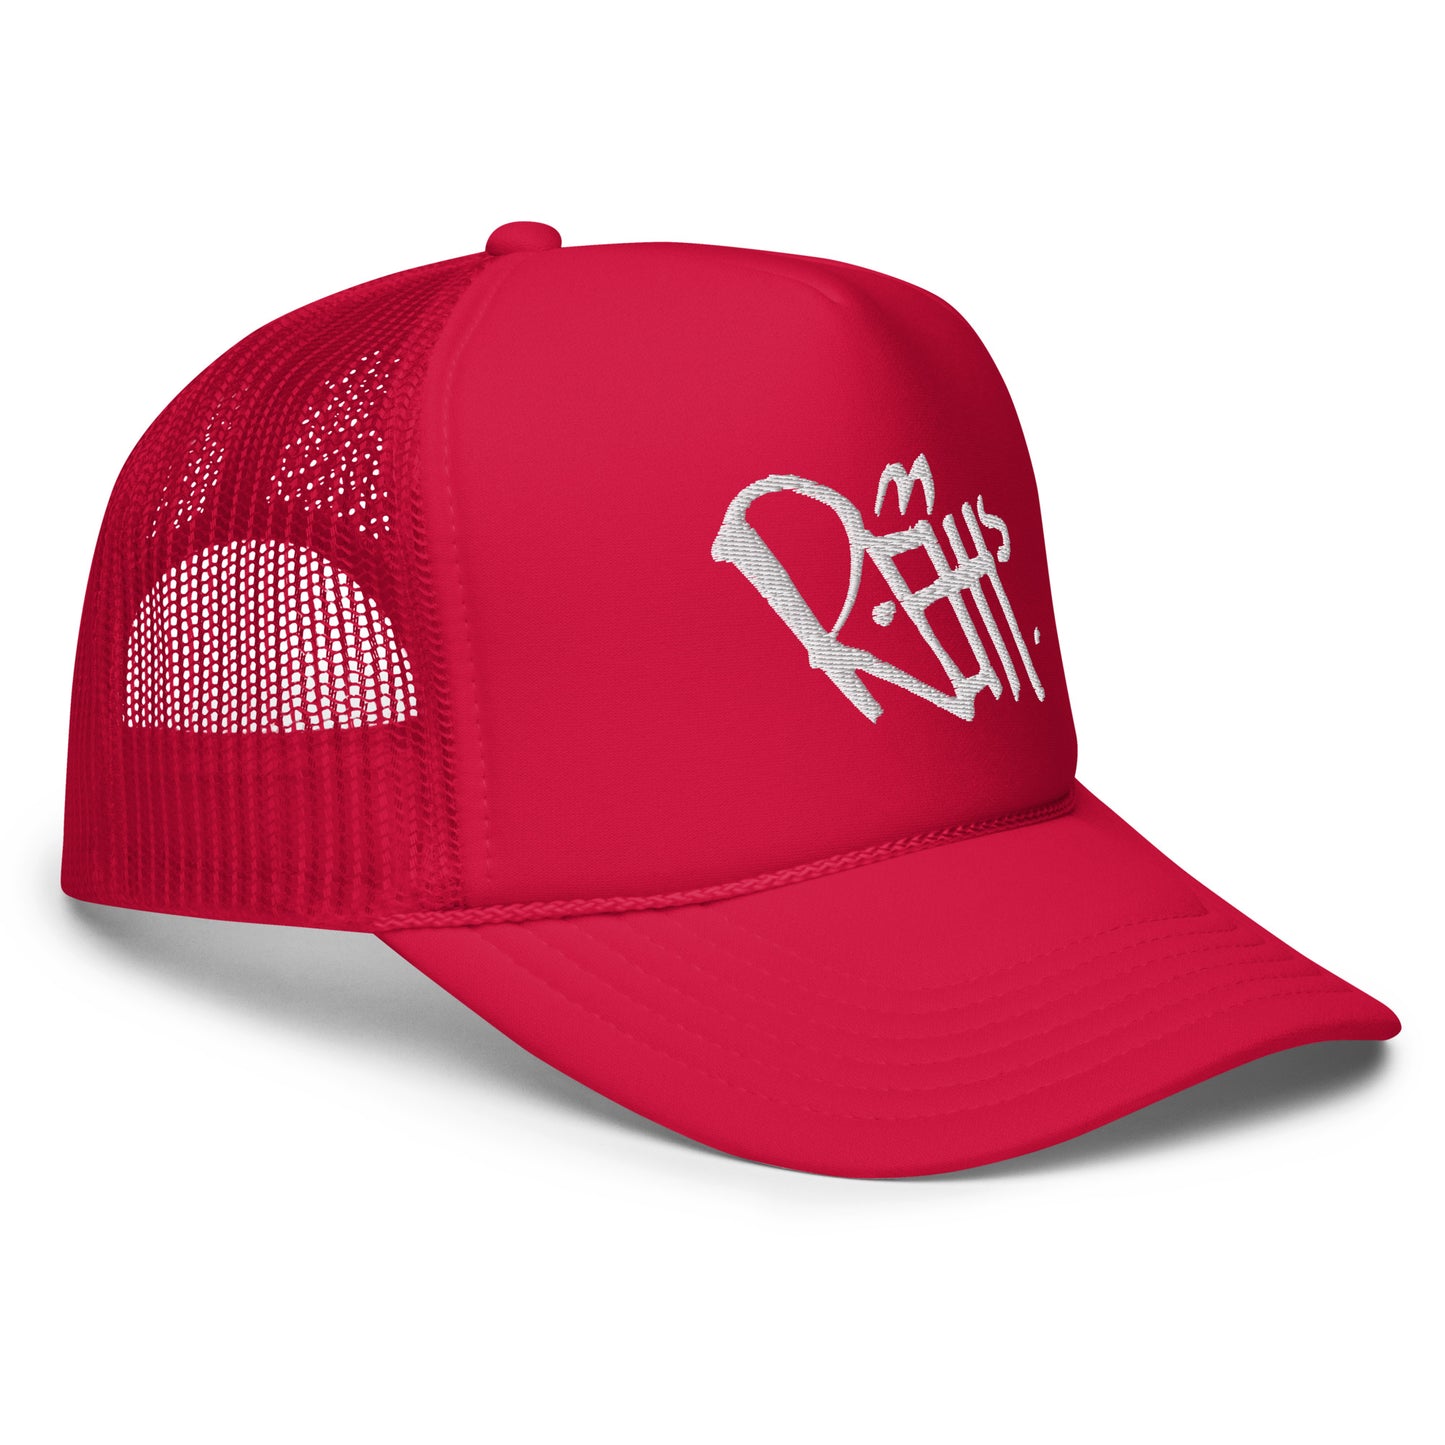 REHH - Foam trucker hat (Red)